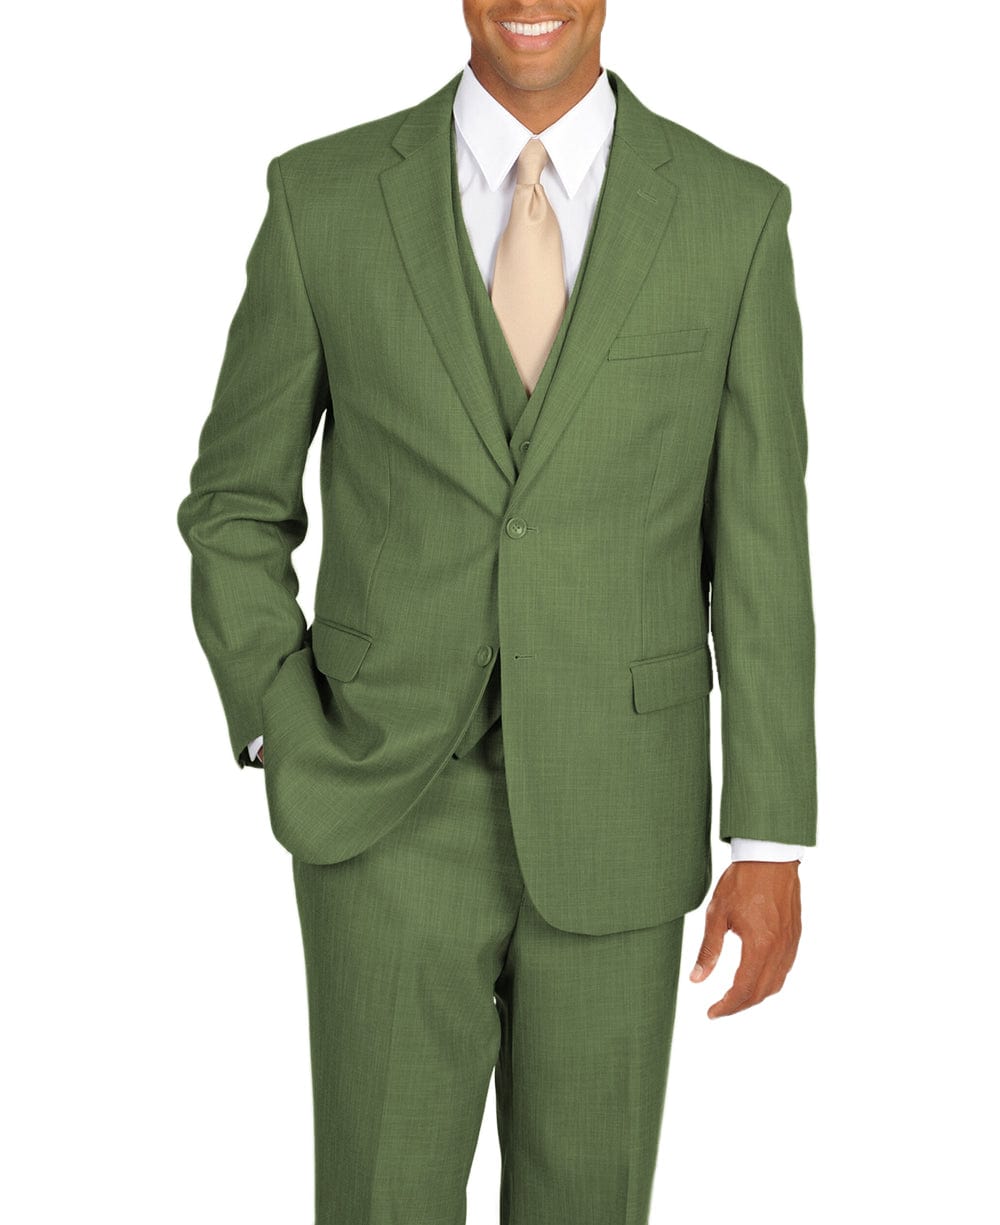 aesido Men's Suit 3 Piece Notch Lapel Jacket（Blazer+Vest+Pants）